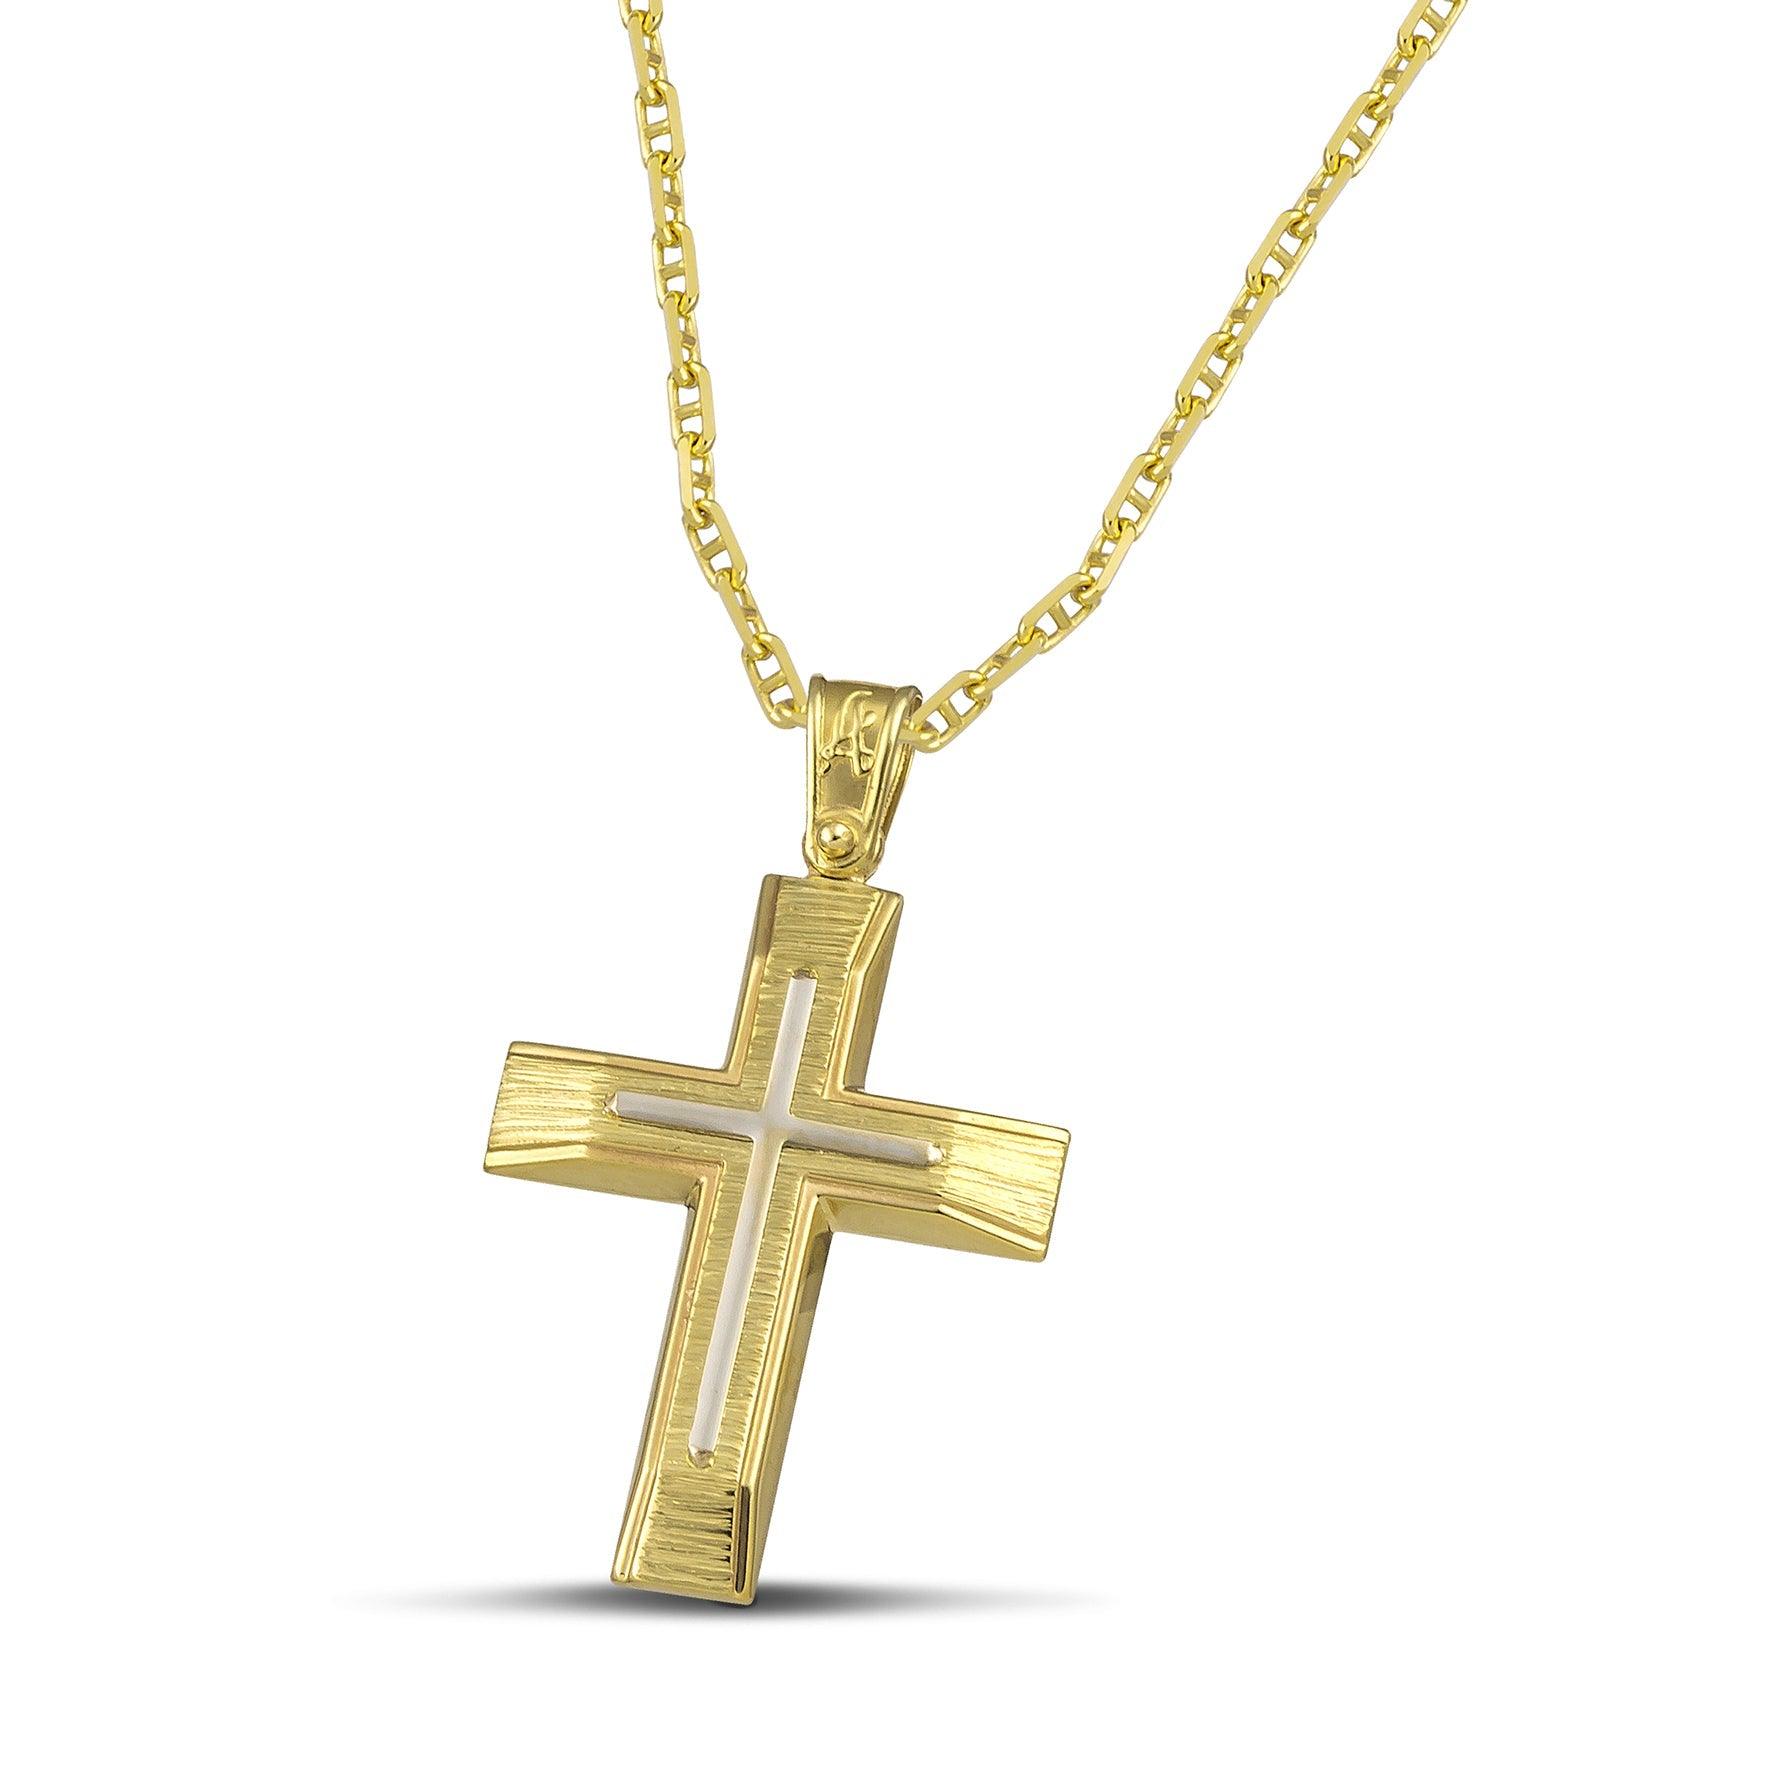 Χρυσός βαφτιστικός σταυρός Κ14 για άντρα με λευκόχρυσο σαγρέ, σε «Θ» αλυσίδα.